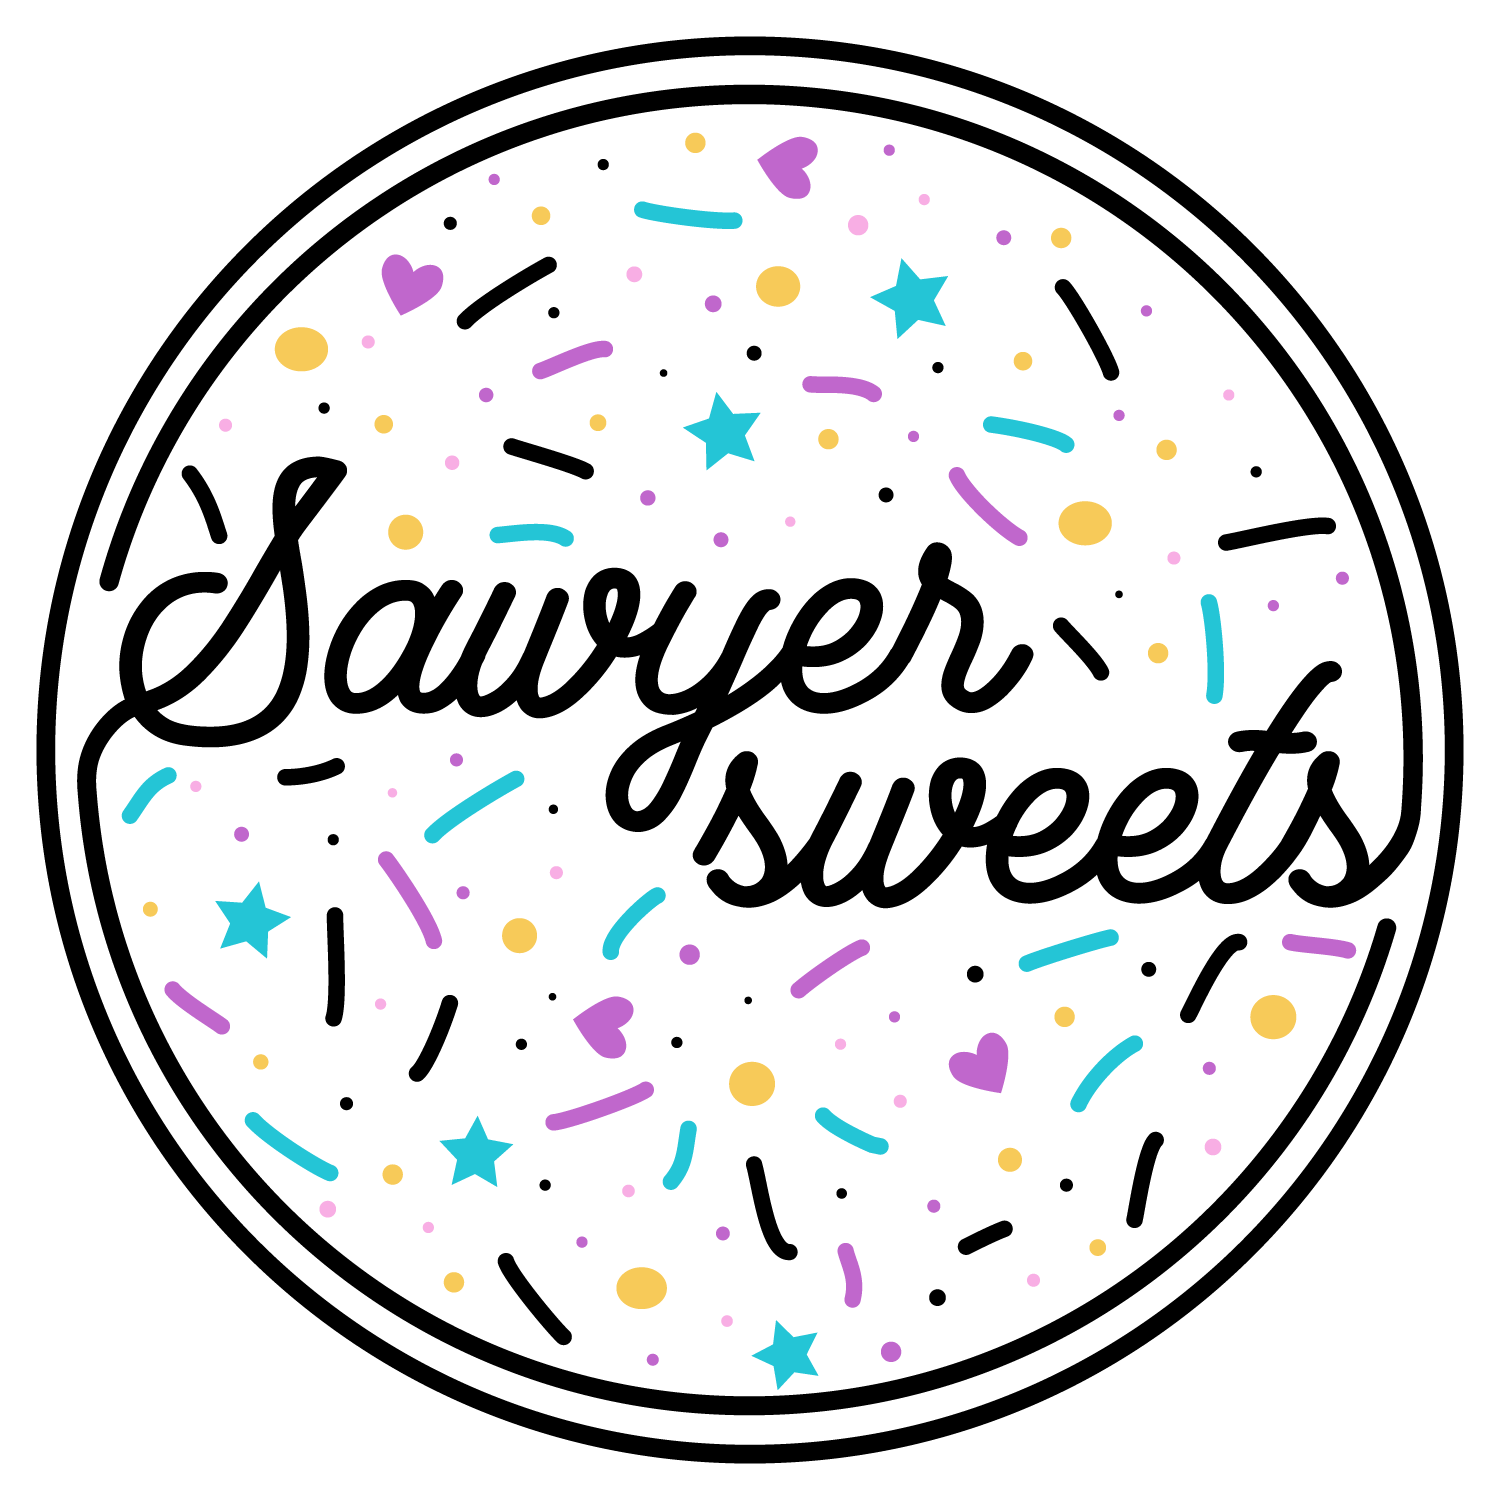 Sawyer Sweets